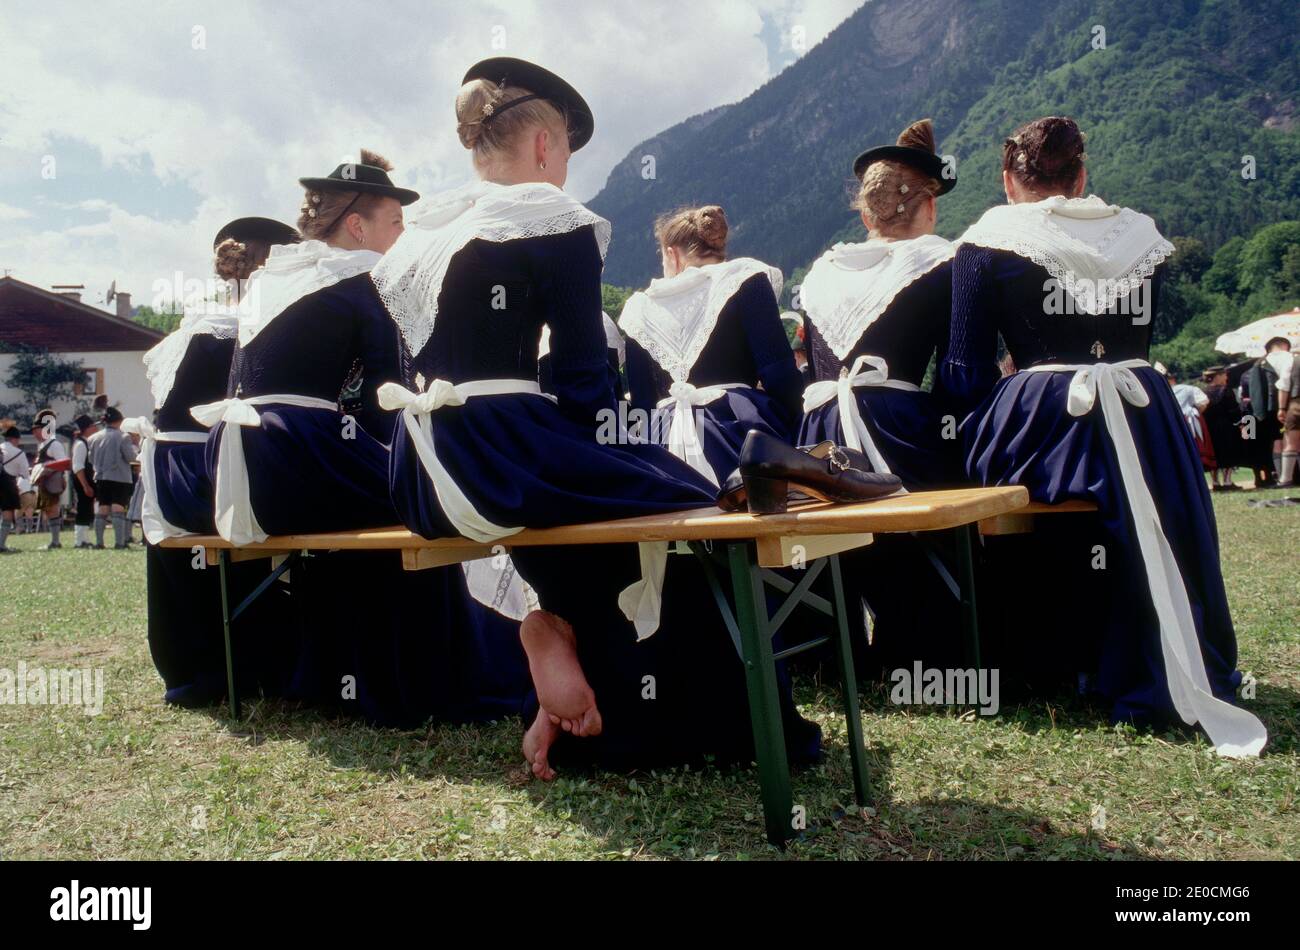 Allemagne /Bavière / Bavarois Beerfestival filles portant des vêtements traditionnels et une fille a pris ses chaussures de . Banque D'Images